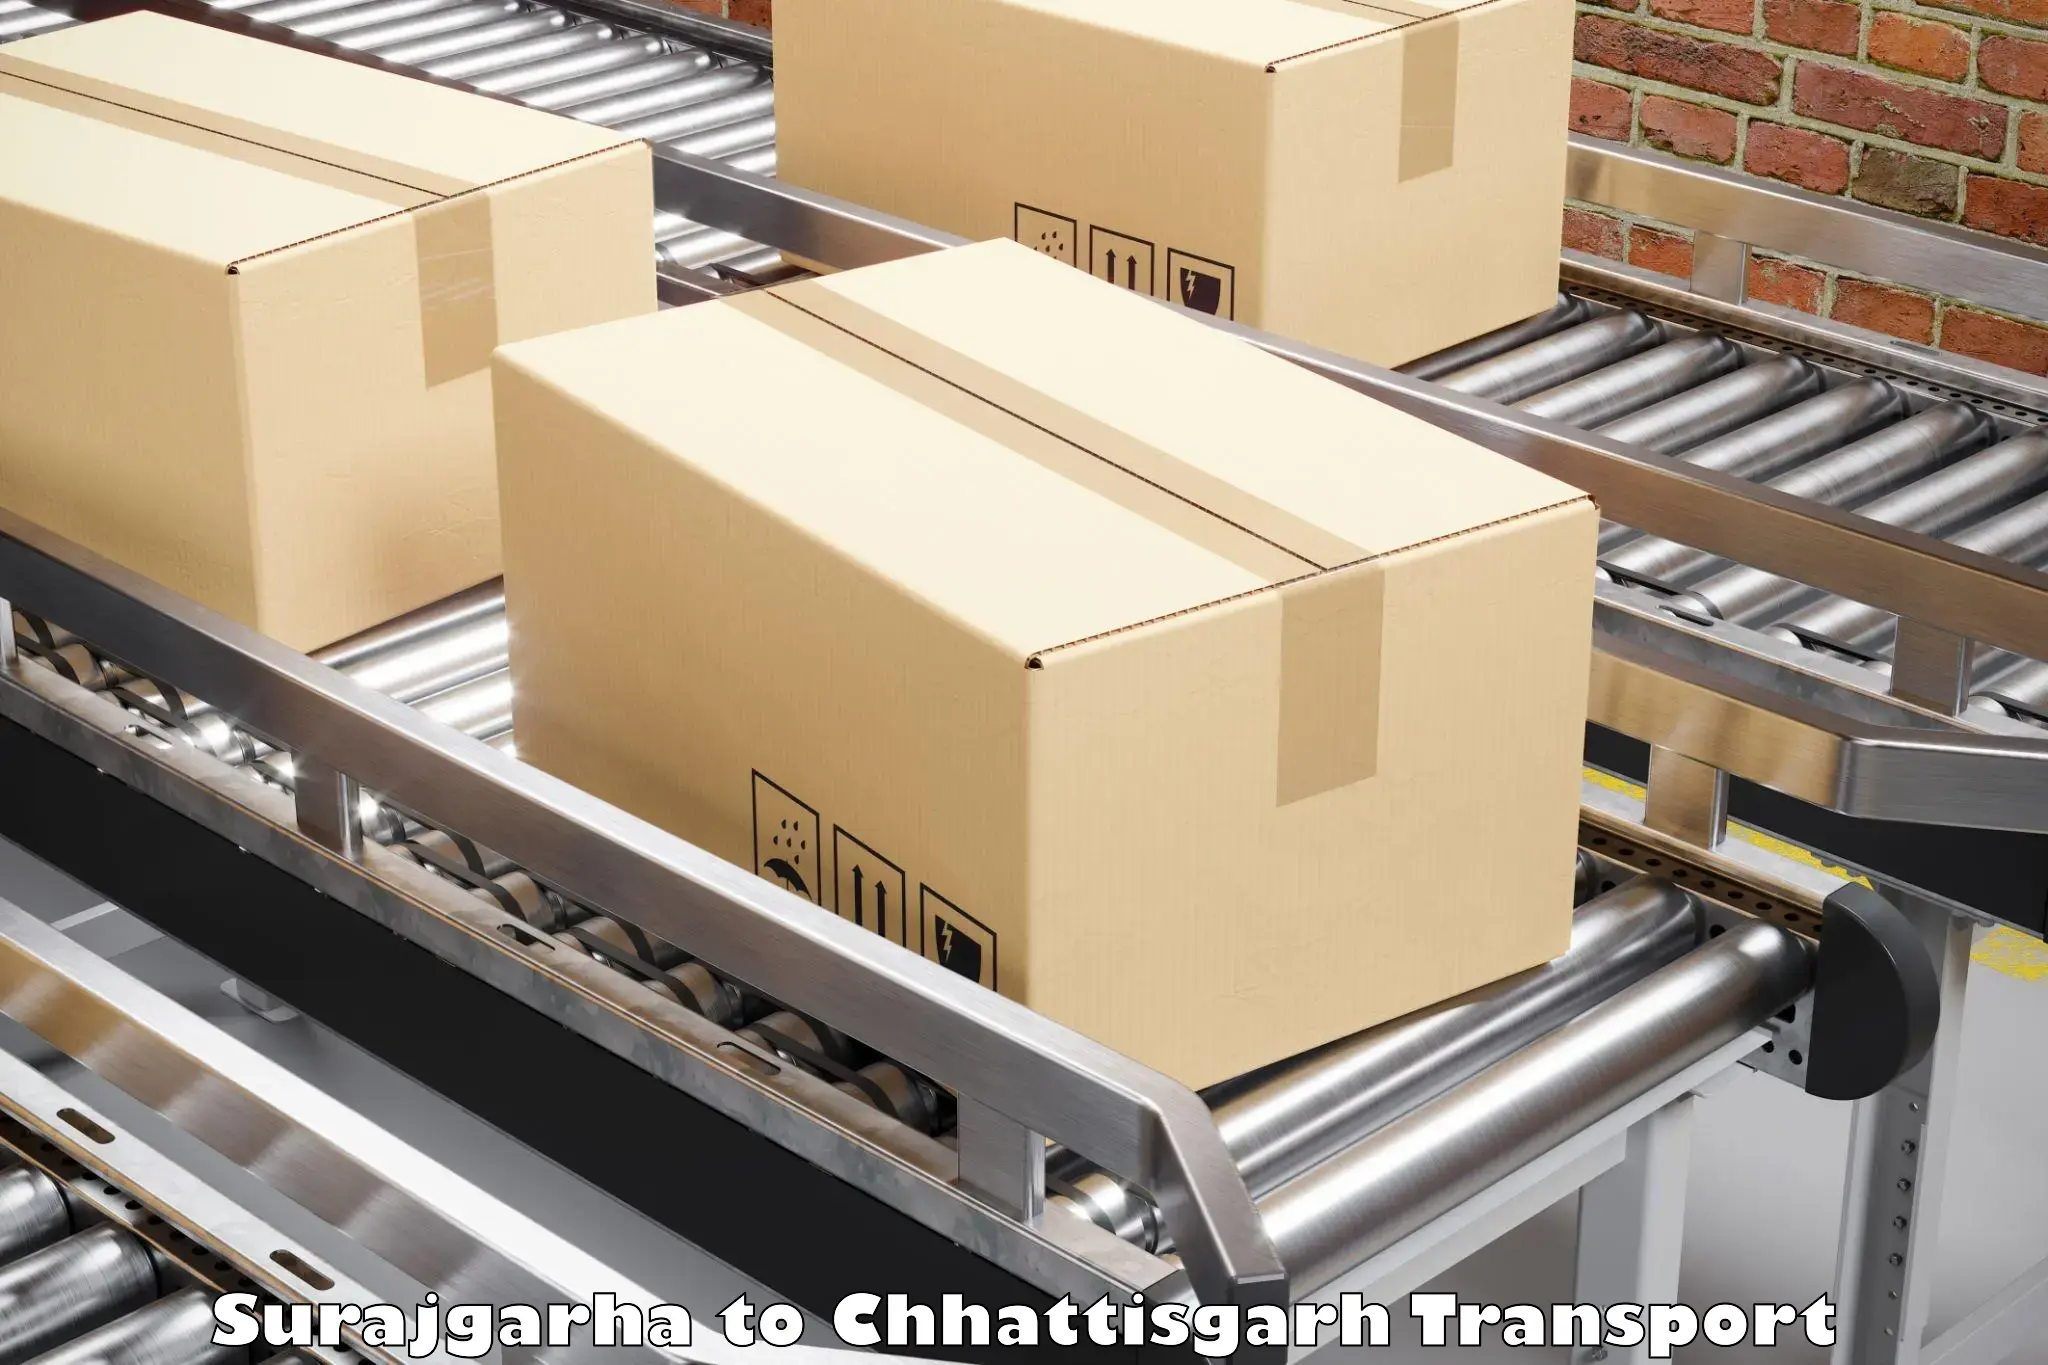 Transportation services in Surajgarha to Patna Chhattisgarh